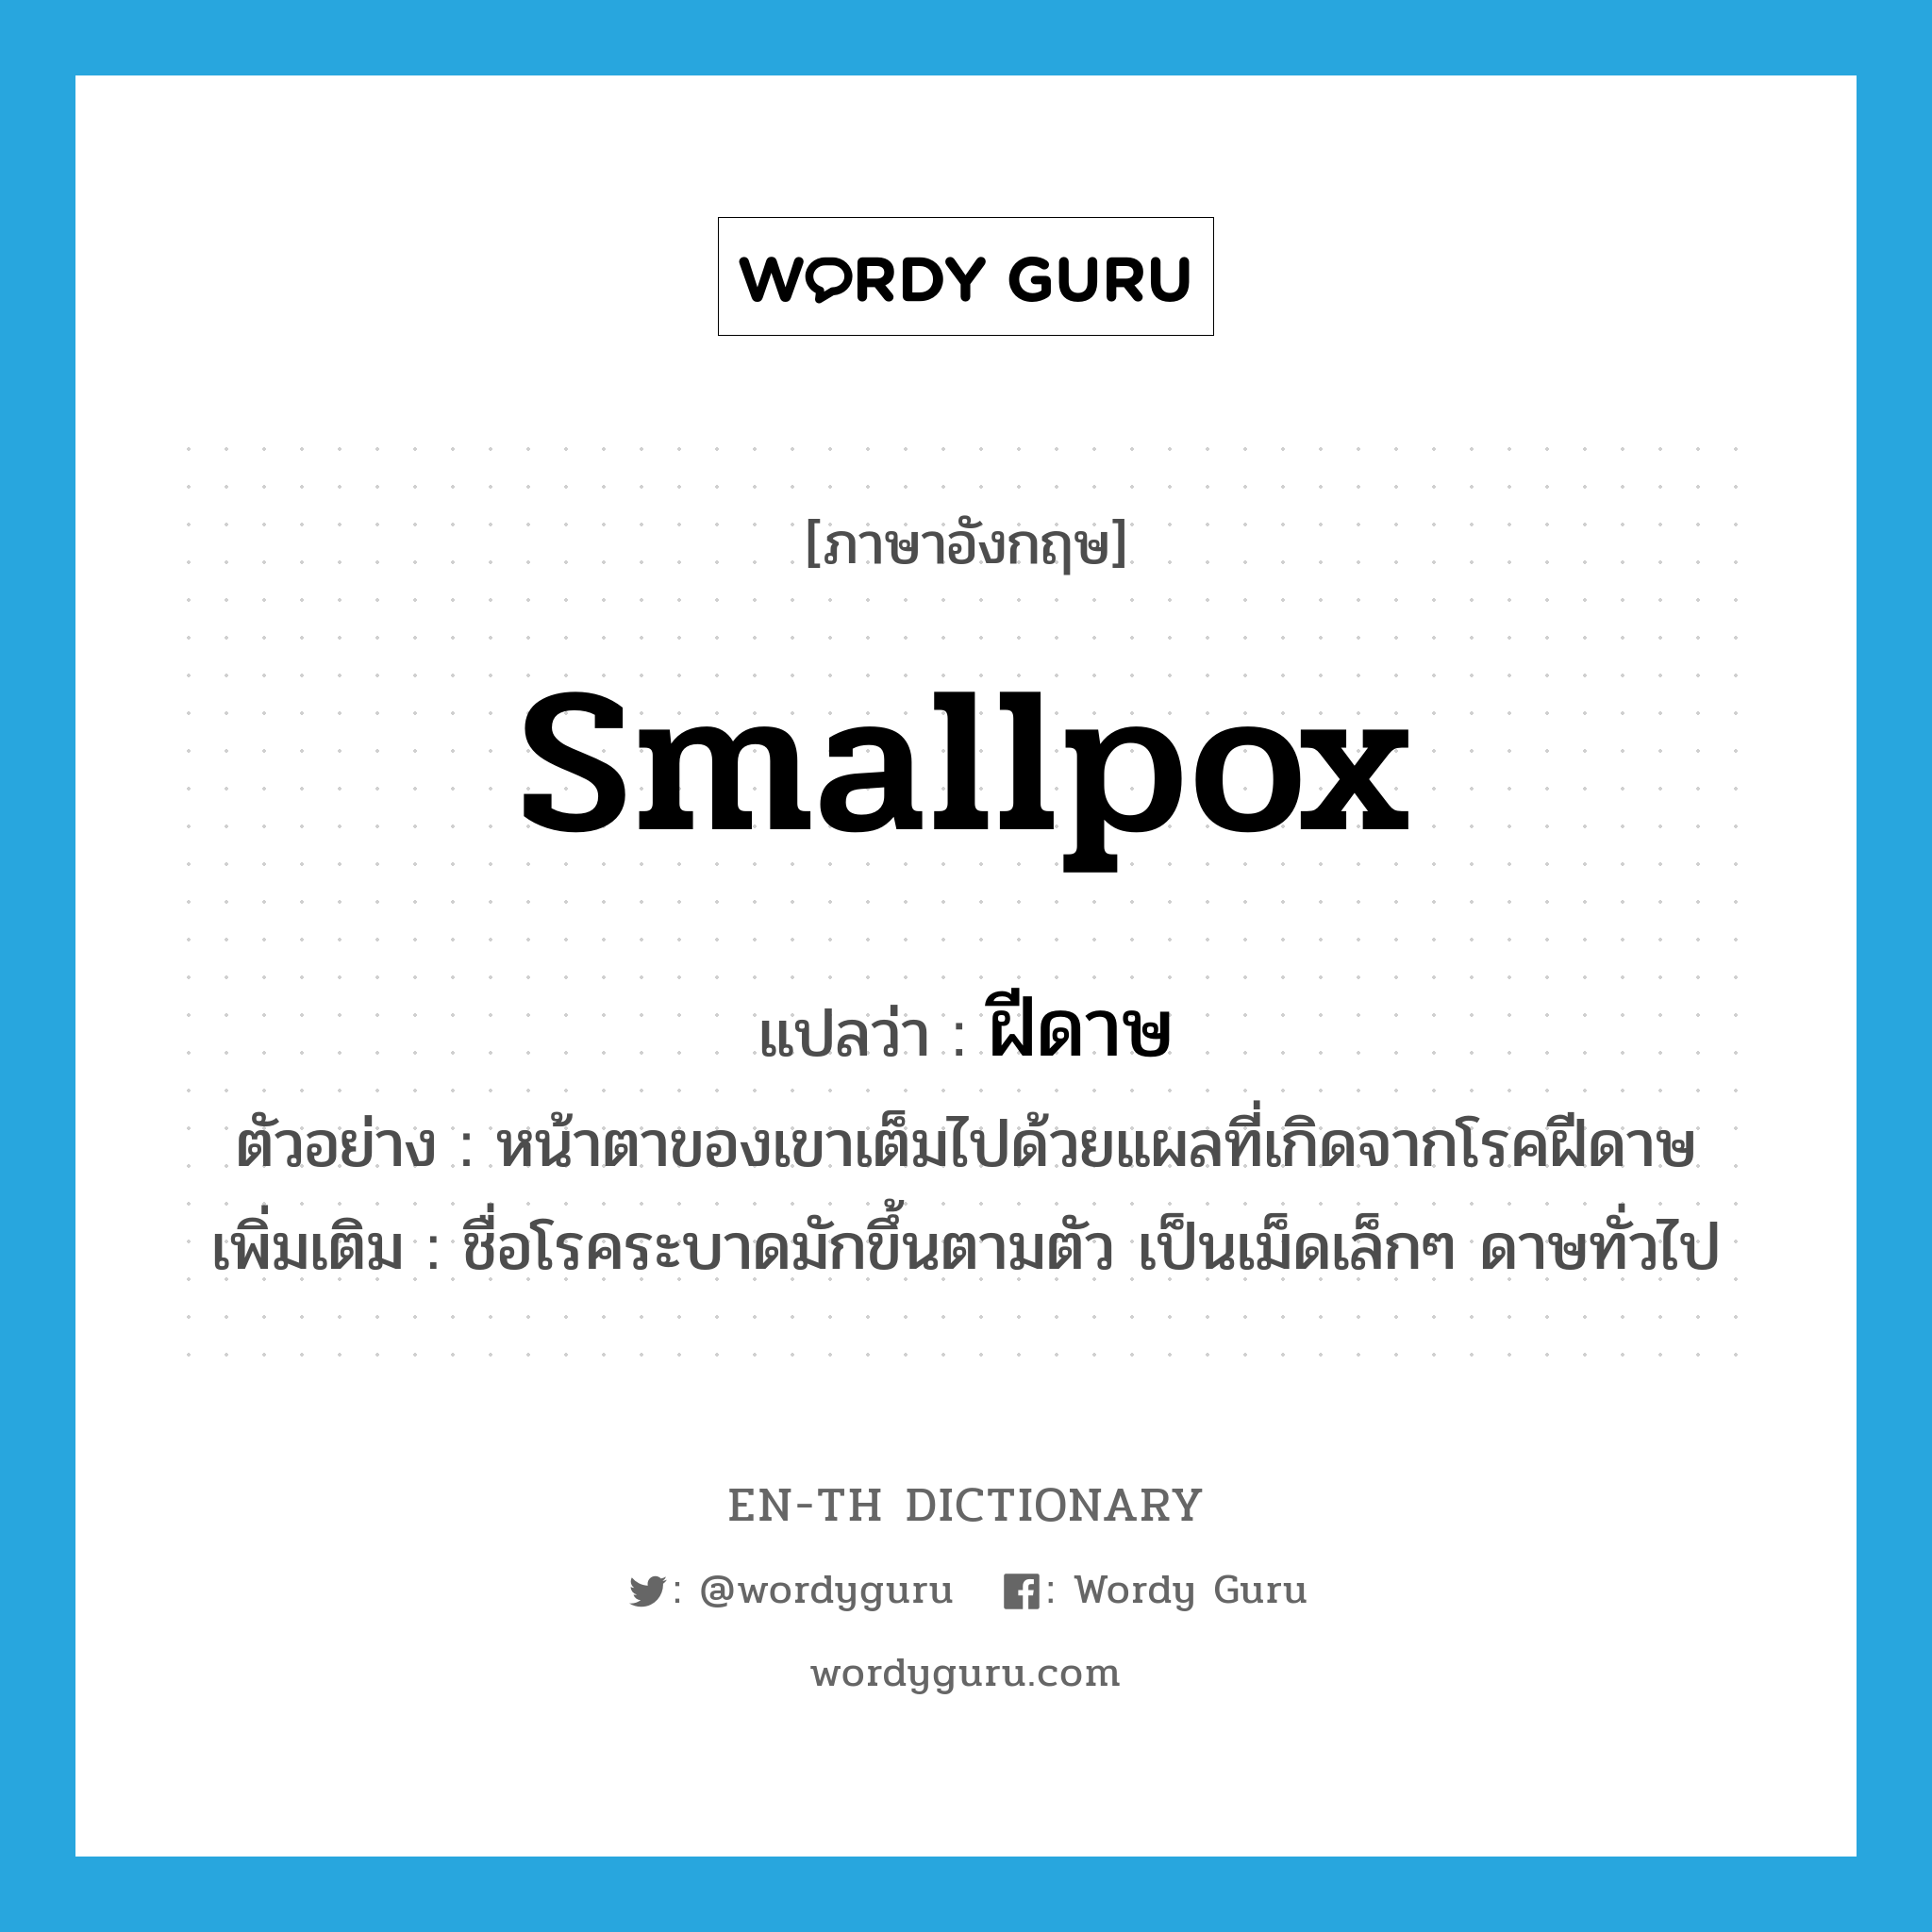 smallpox แปลว่า?, คำศัพท์ภาษาอังกฤษ smallpox แปลว่า ฝีดาษ ประเภท N ตัวอย่าง หน้าตาของเขาเต็มไปด้วยแผลที่เกิดจากโรคฝีดาษ เพิ่มเติม ชื่อโรคระบาดมักขึ้นตามตัว เป็นเม็ดเล็กๆ ดาษทั่วไป หมวด N